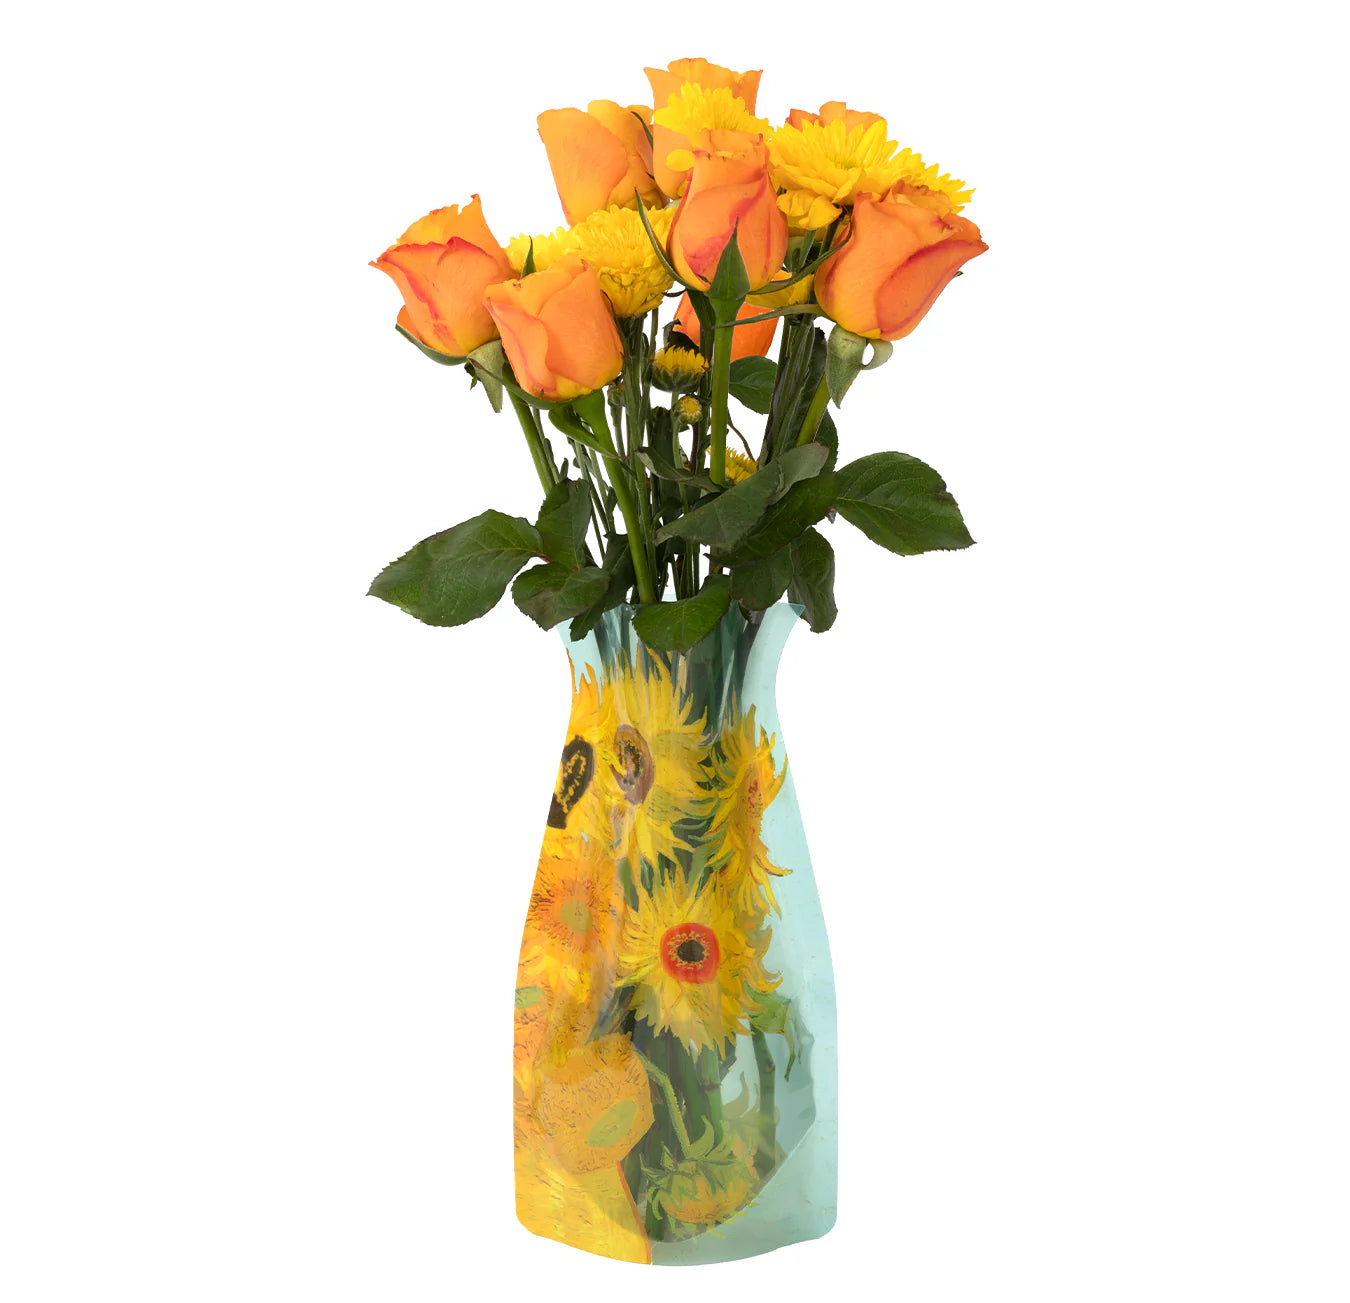 Vincent Van Gogh Sunflowers Vase - Modgy